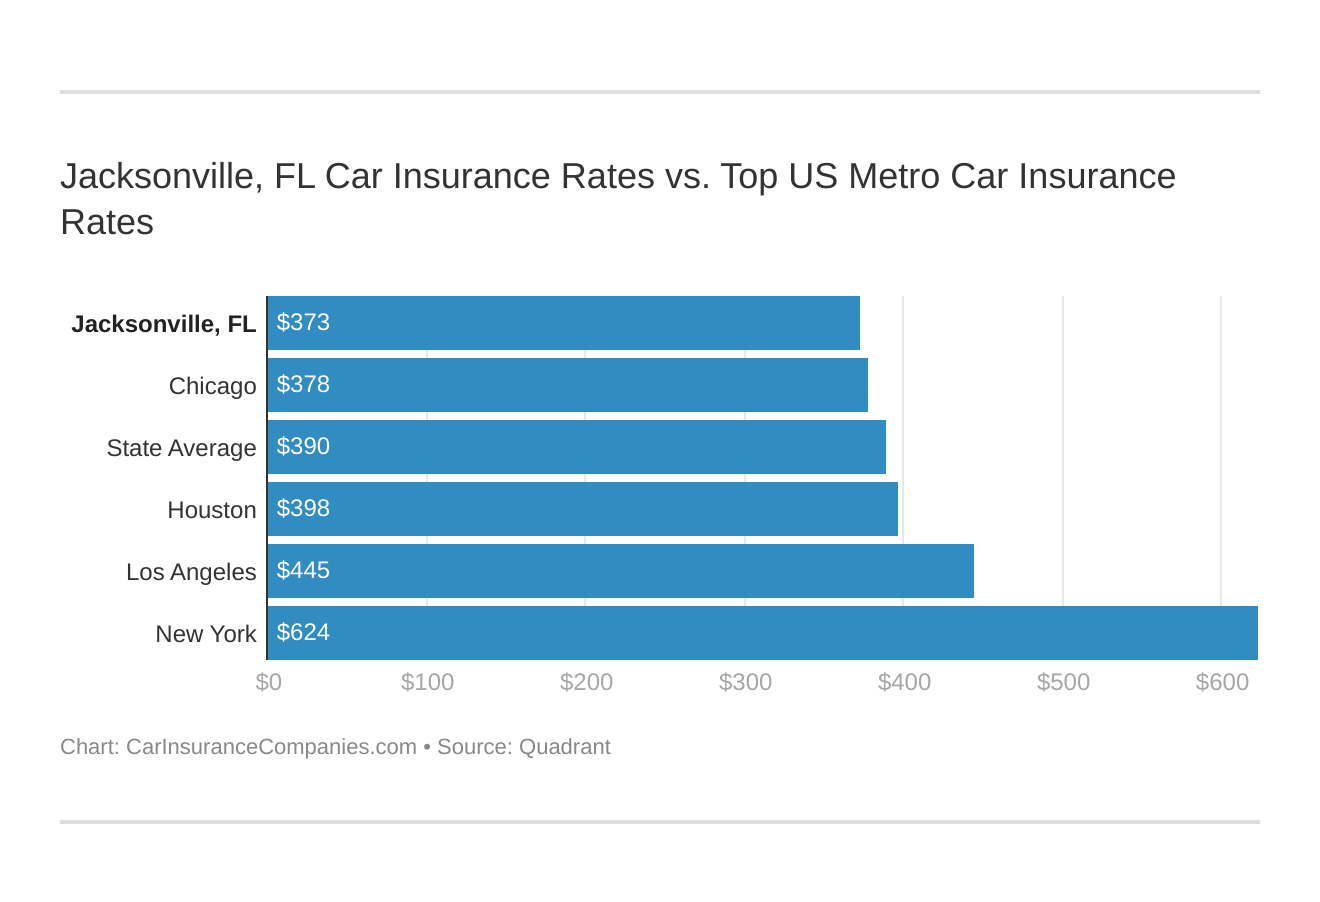 Jacksonville, FL Car Insurance Rates vs. Top US Metro Car Insurance Rates